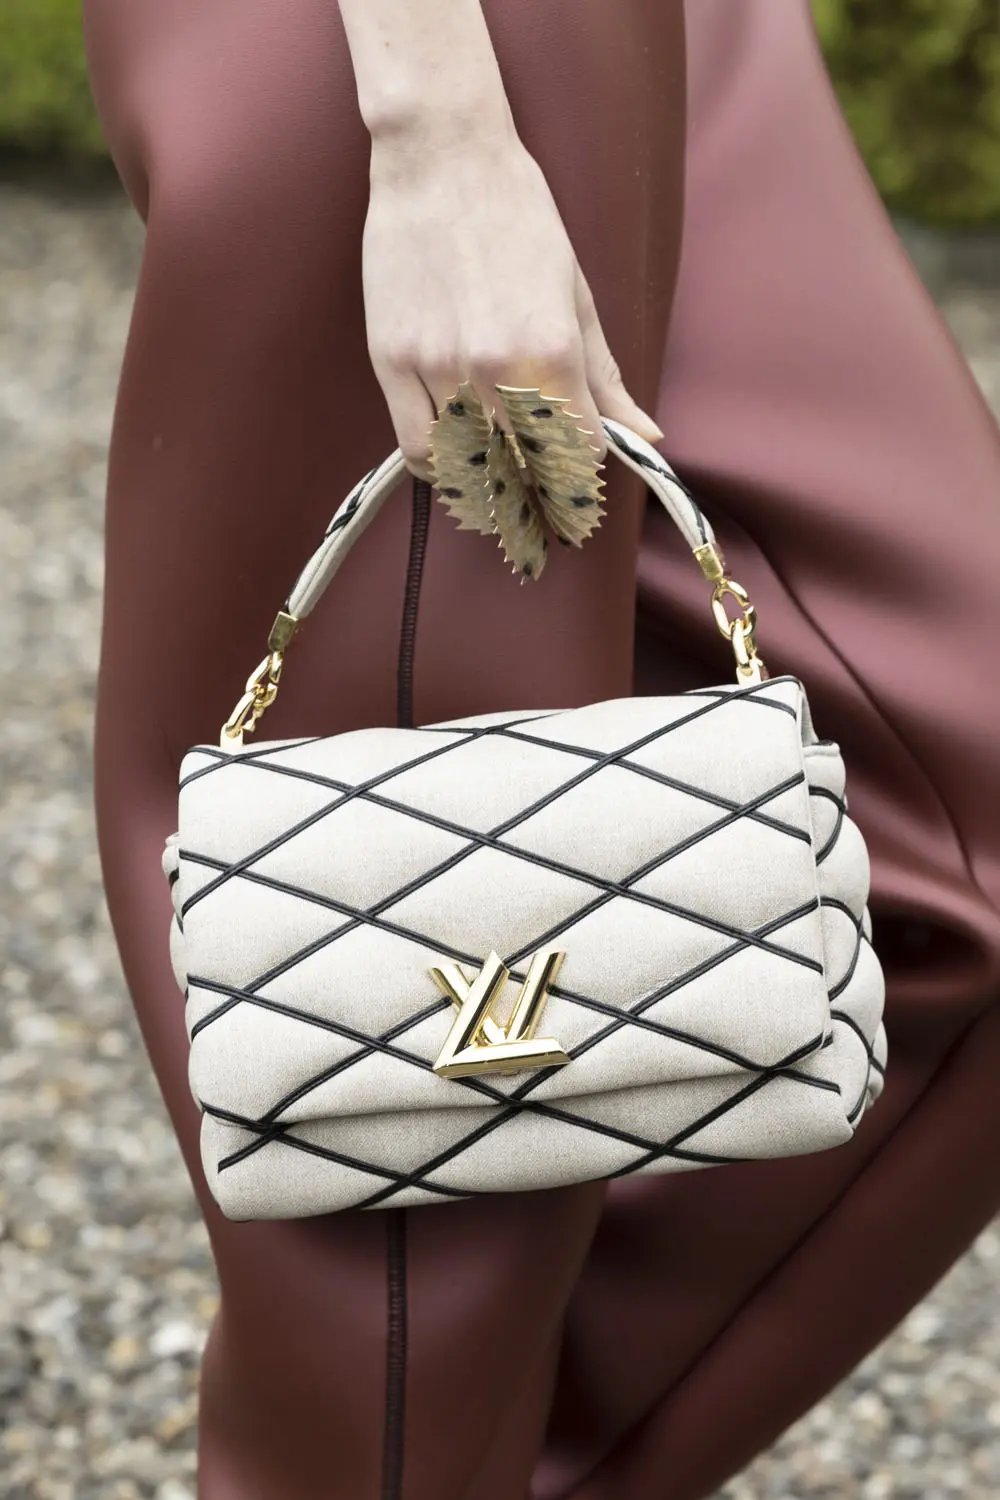 Womens Louis Vuitton Bags, LV Bags